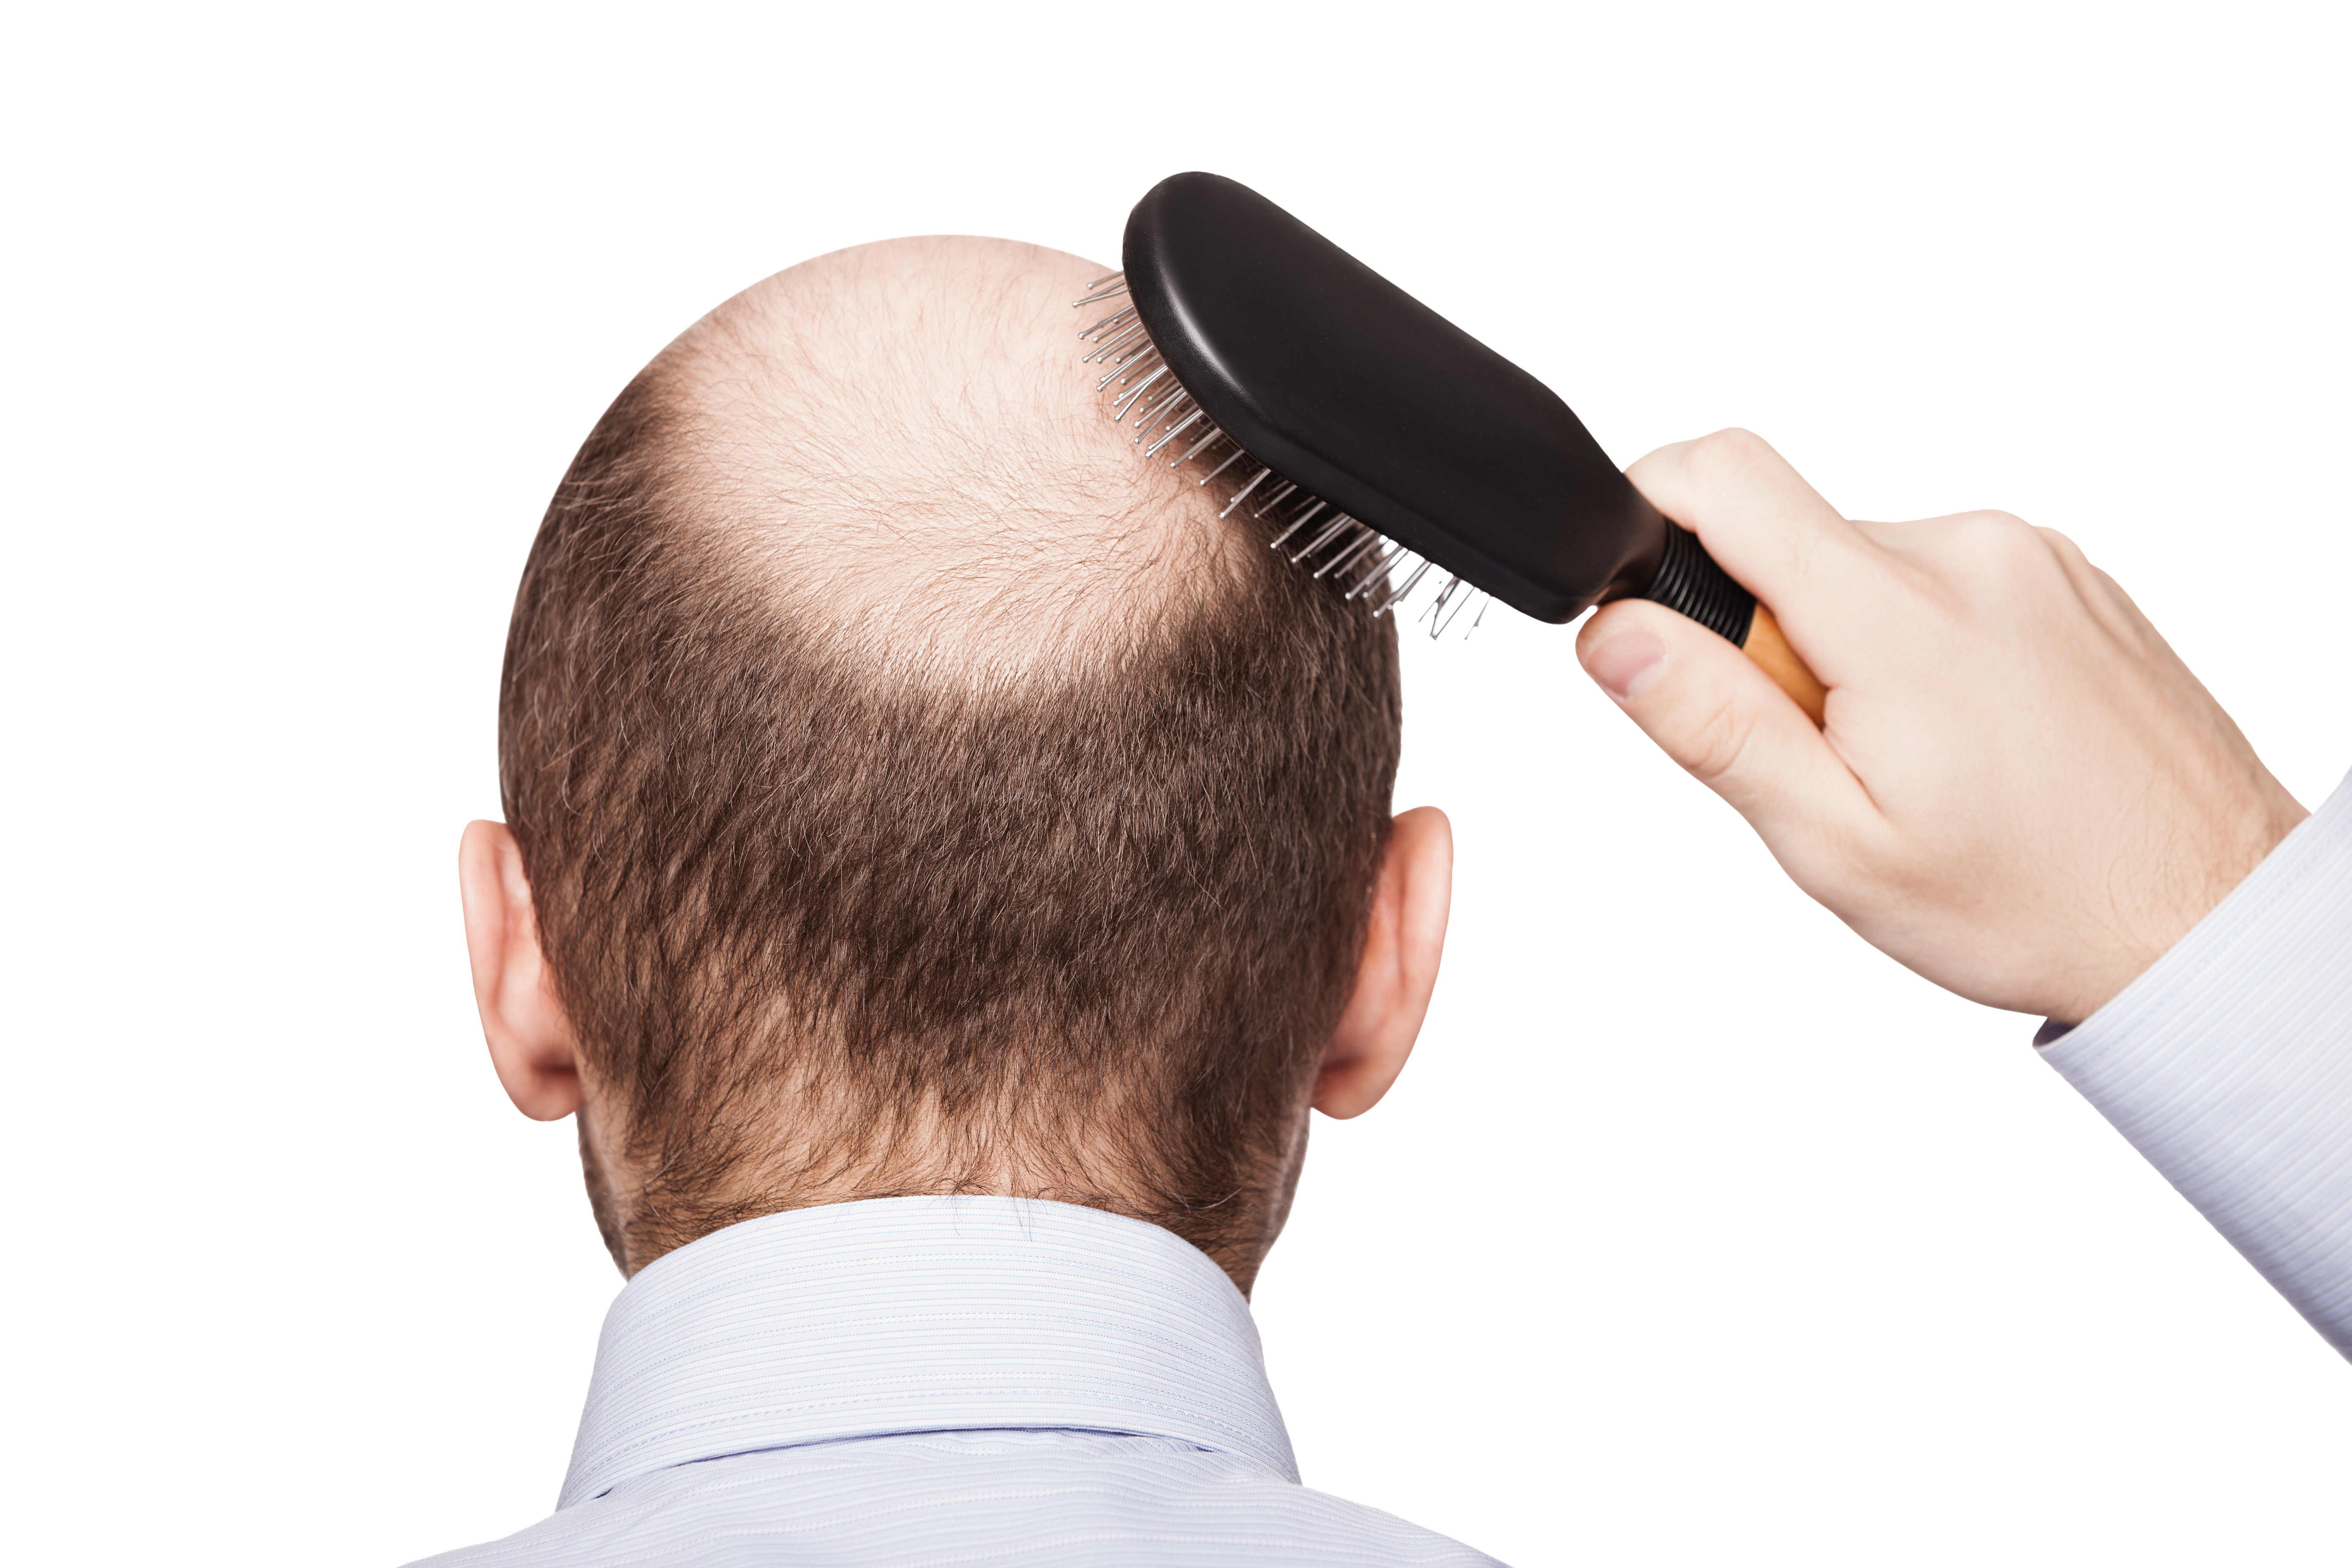 câu hỏi thường gặp về rụng tóc ở nam giới